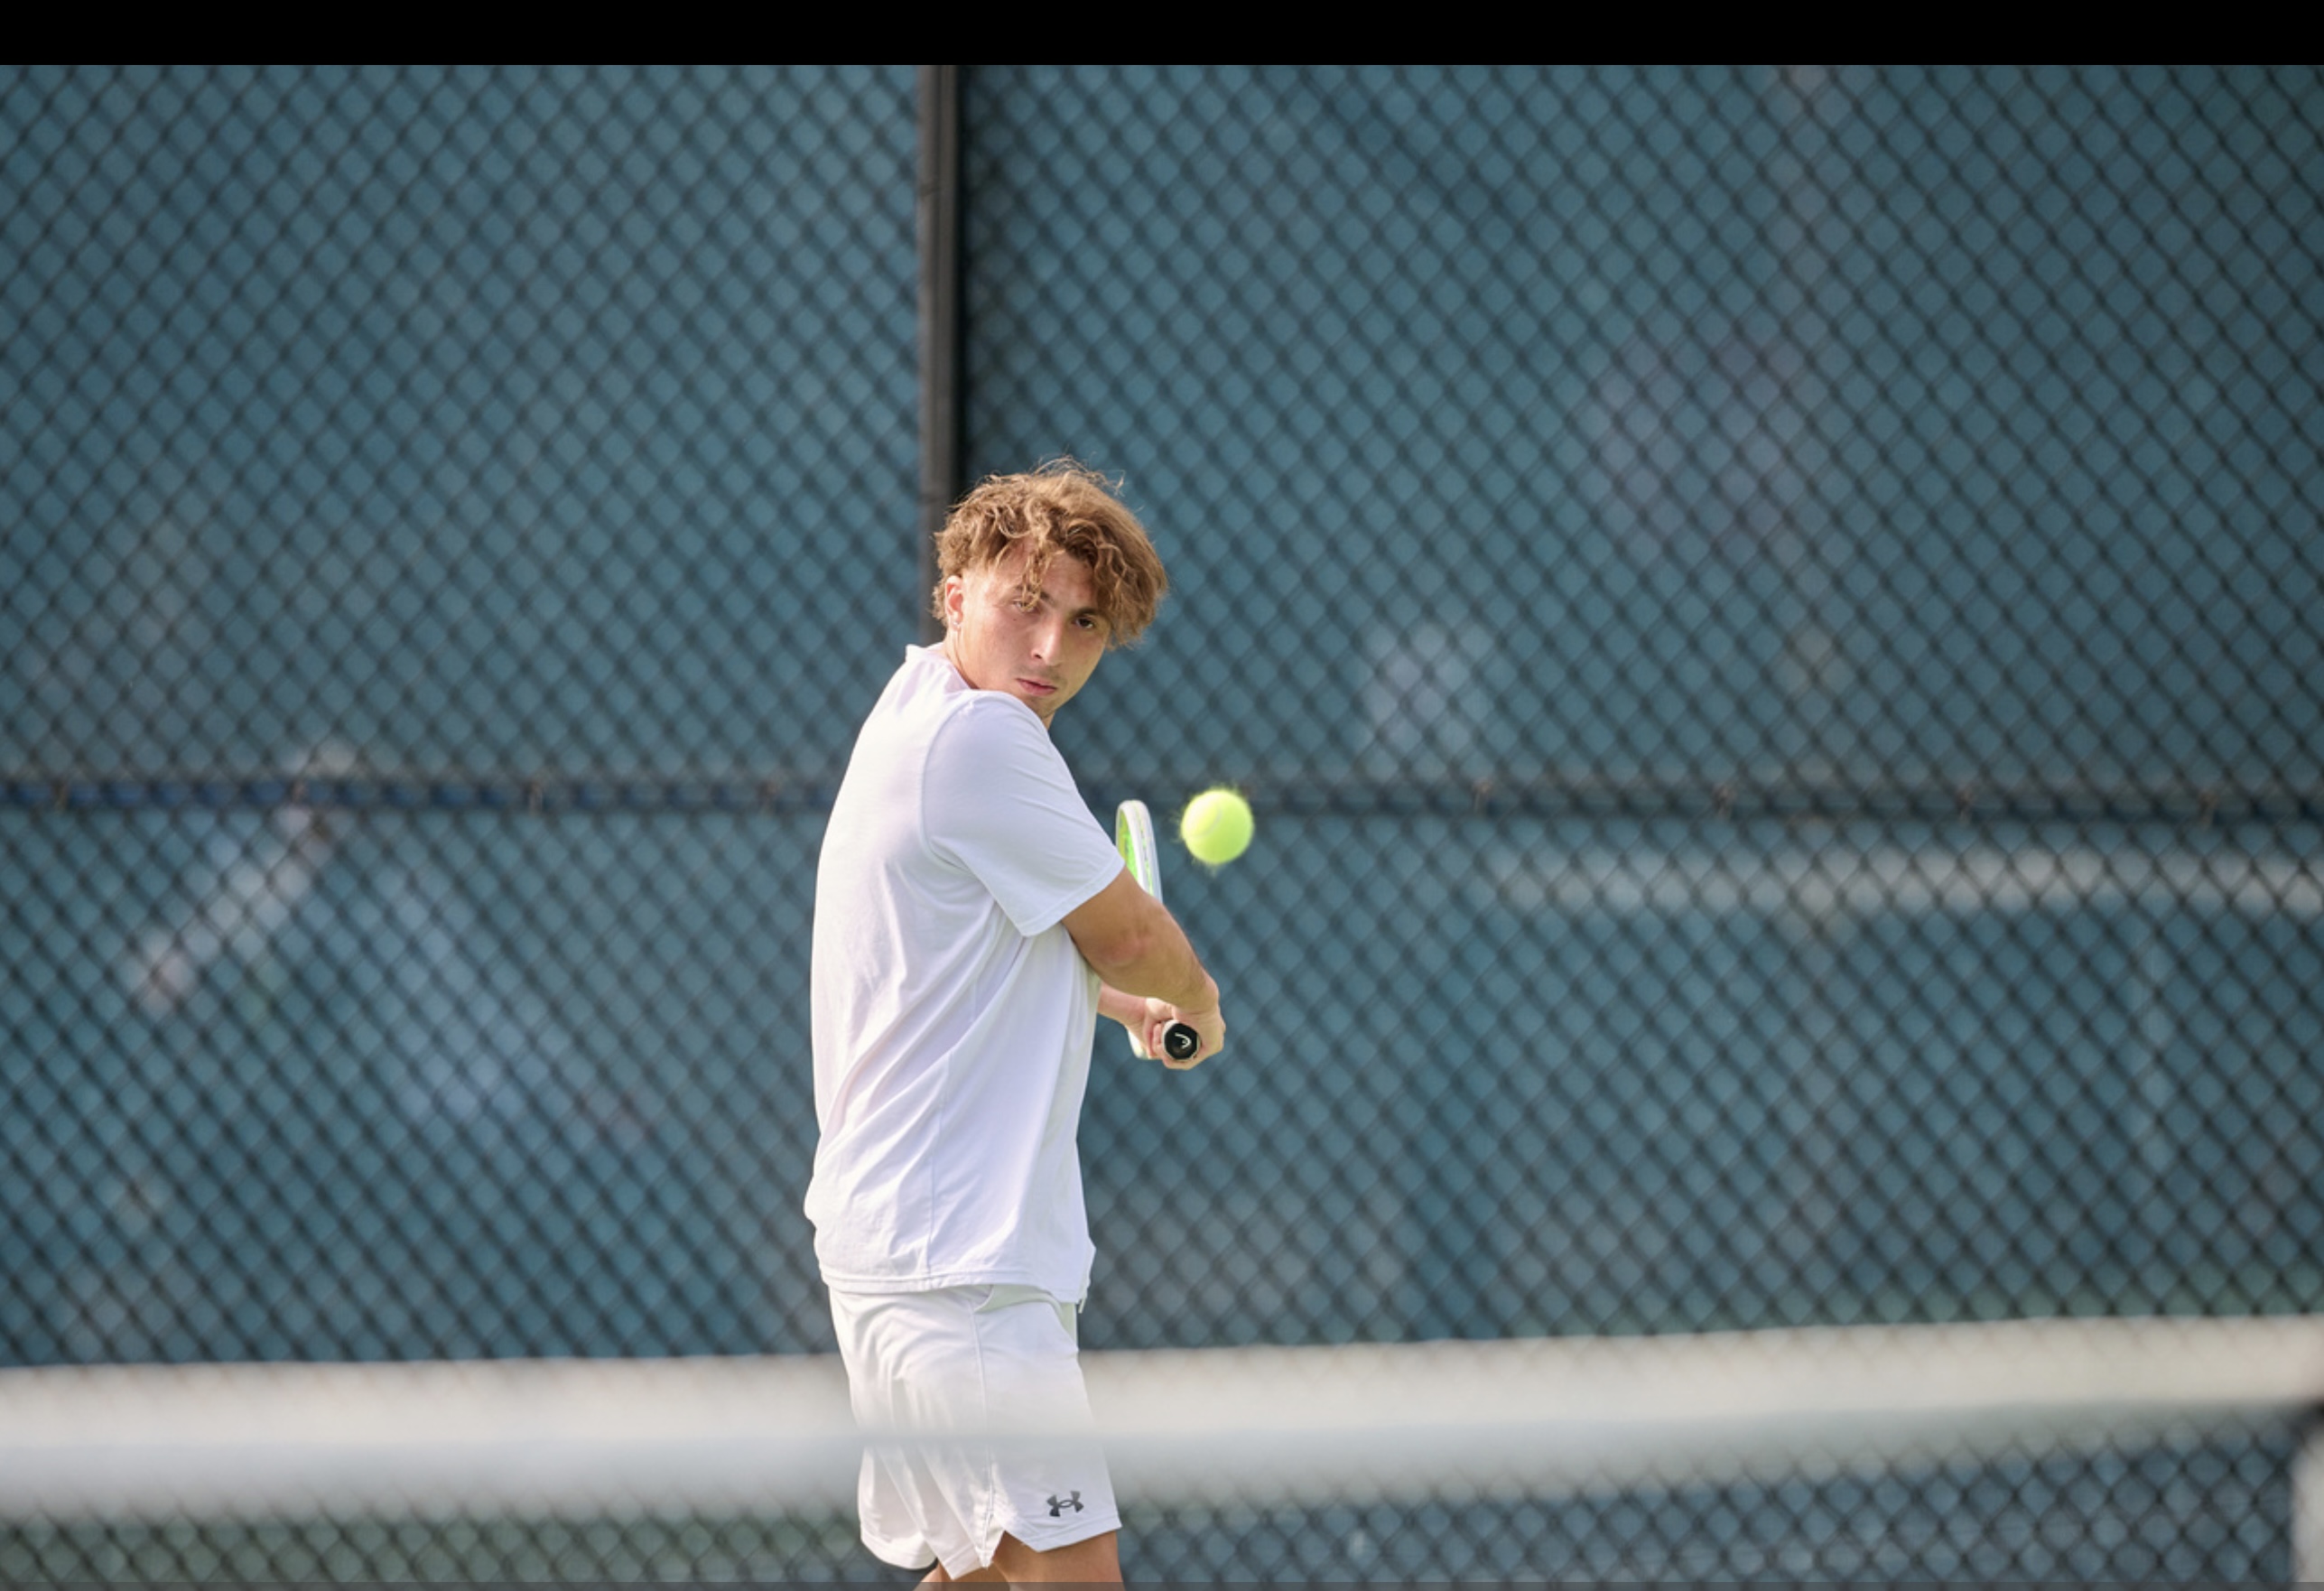 Amir teaches tennis lessons in Newport Beach , CA